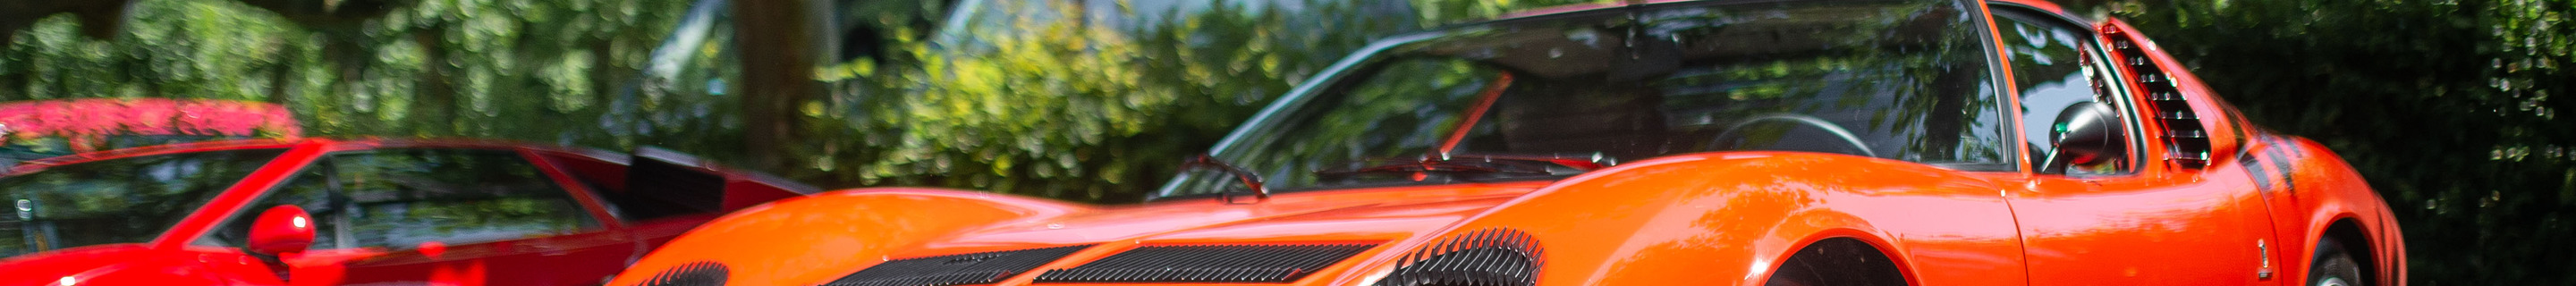 Lamborghini Miura P400